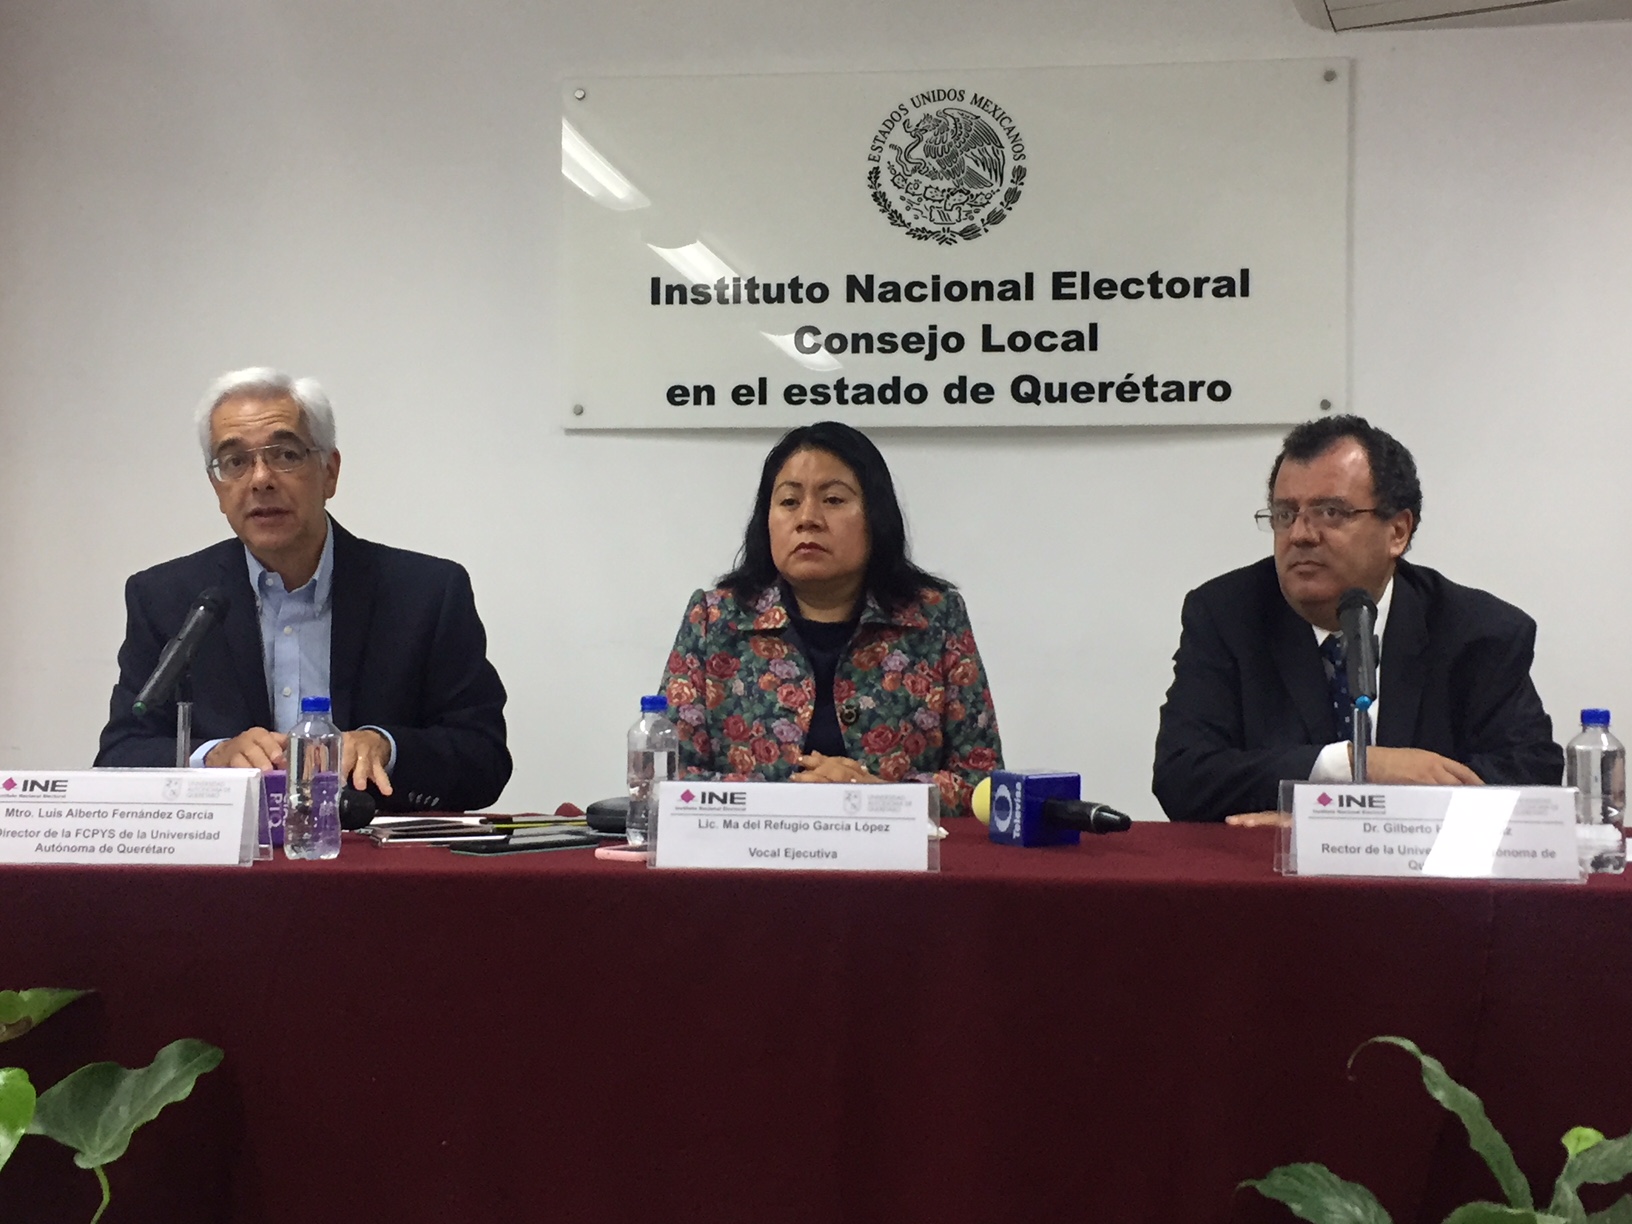  Solo 3 de 8 diputados federales de Querétaro han aceptado participar en evento de transparencia en la UAQ